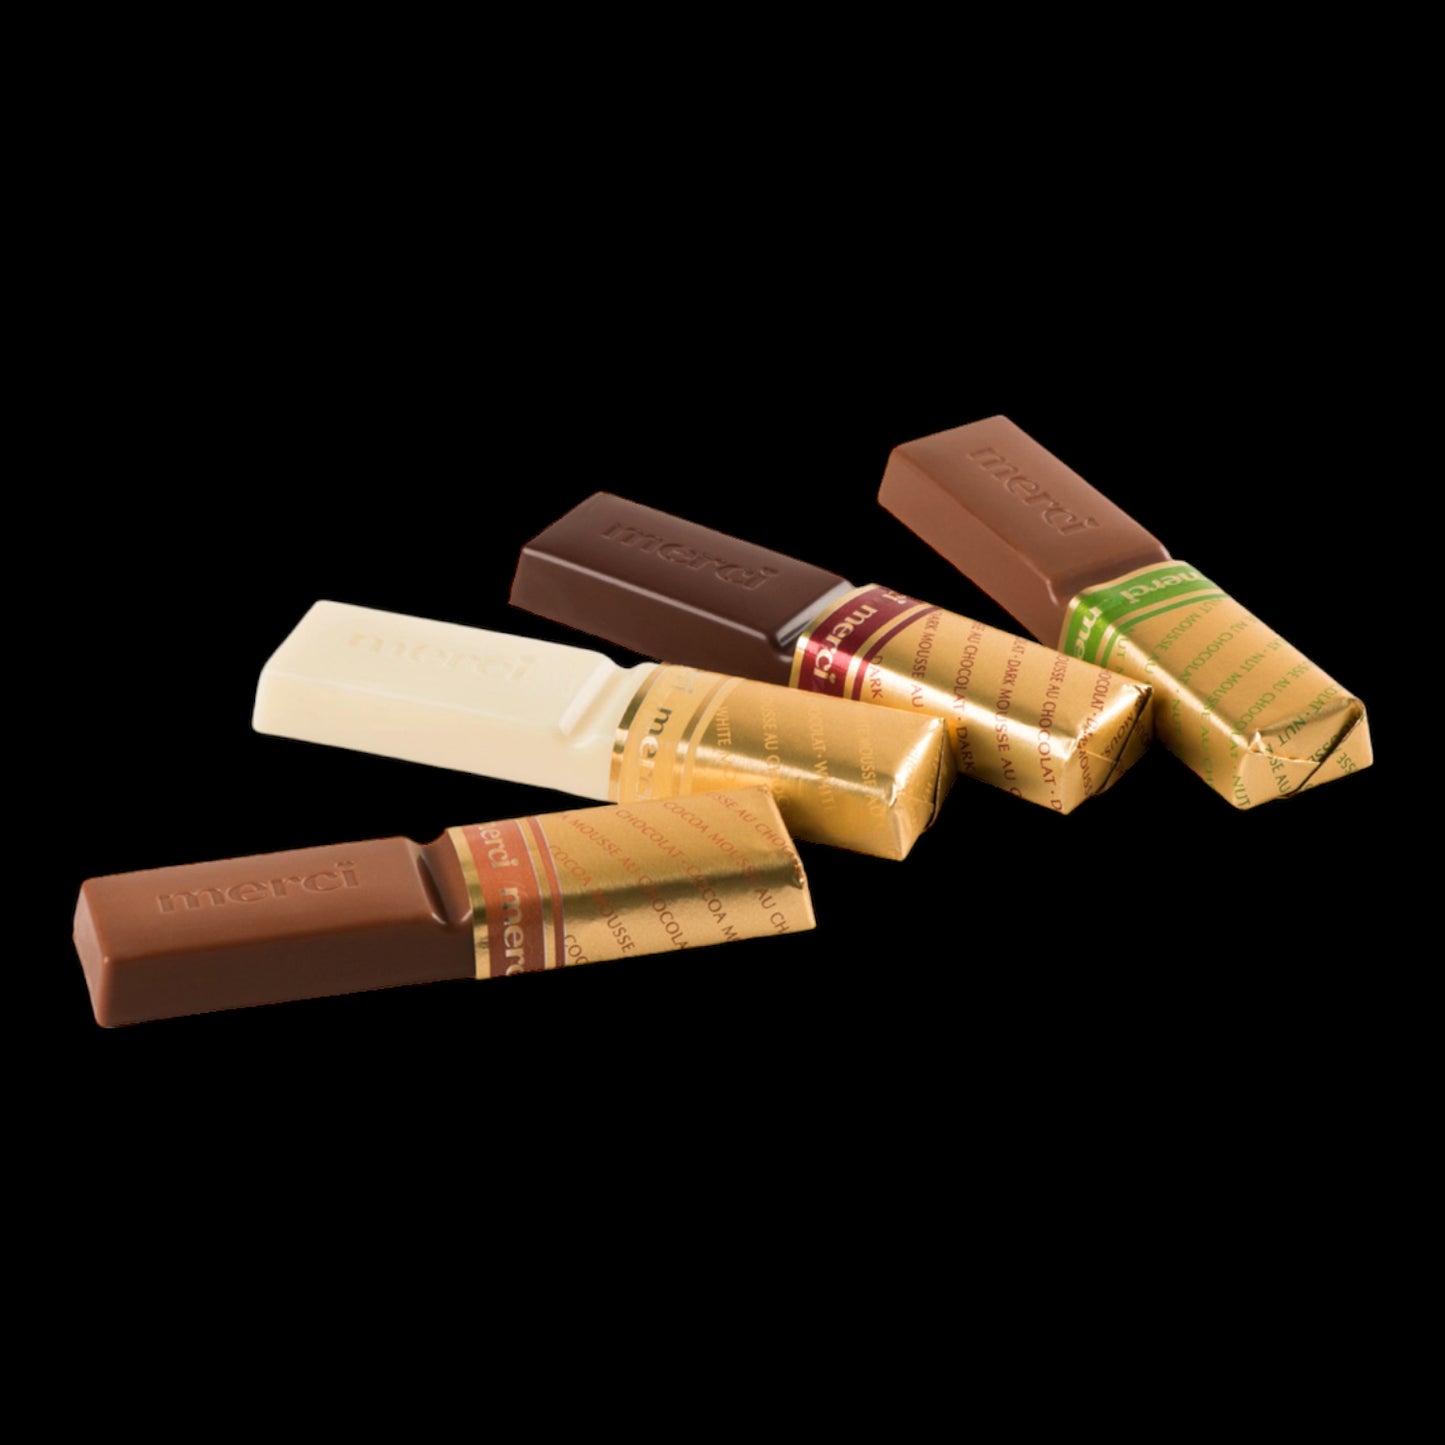 merci Finest Selection Mousse au Chocolat Vielfalt 210g